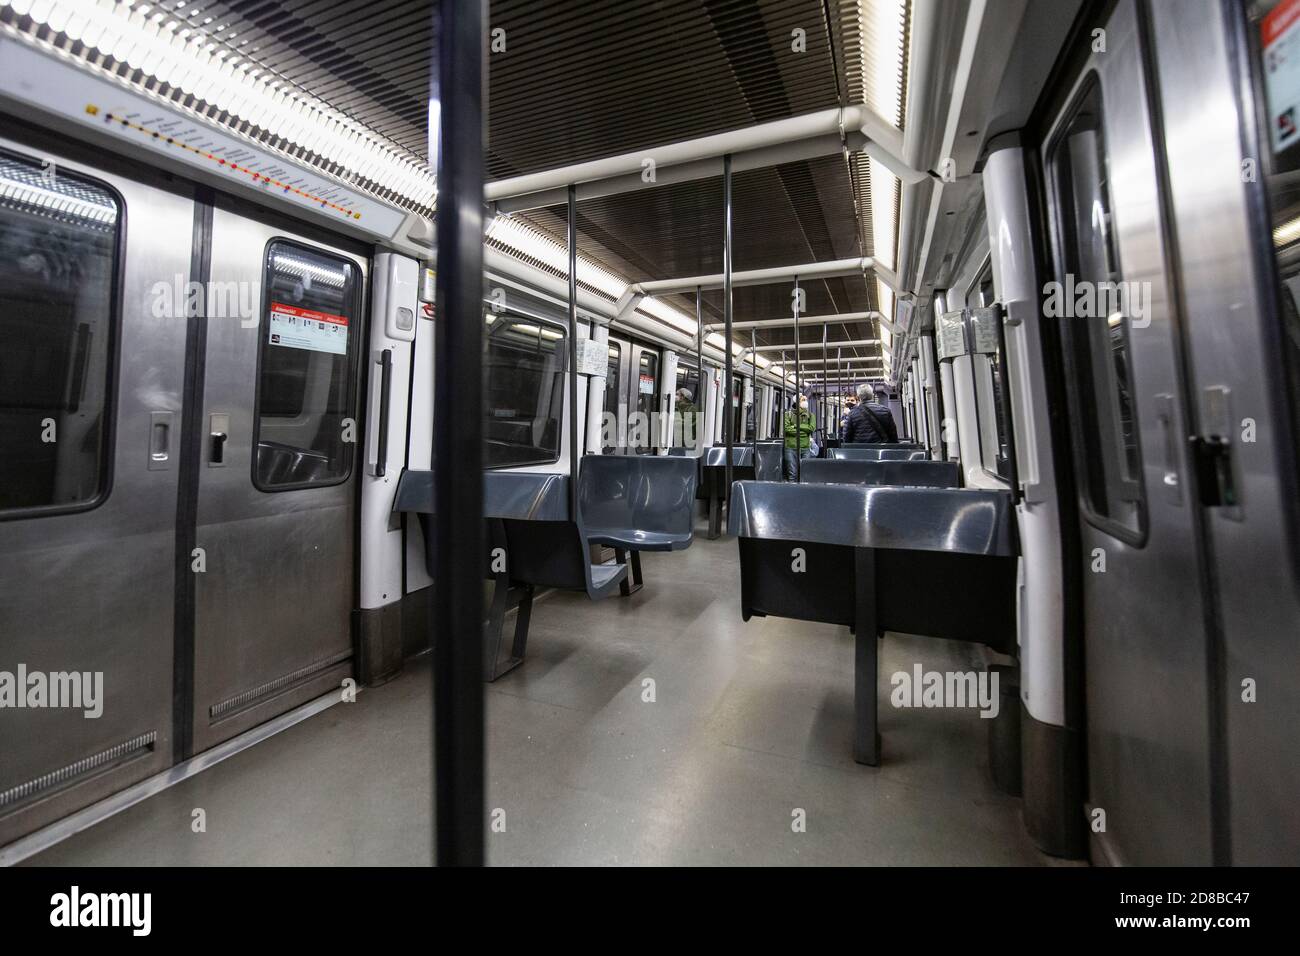 2020.10.28. Barcelone, Espagne. 22:40 h. Dans une voie de métro presque vide, quelques personnes voyagent pendant les premières heures du couvre-feu de la journée. © Aitor Rodero. Banque D'Images